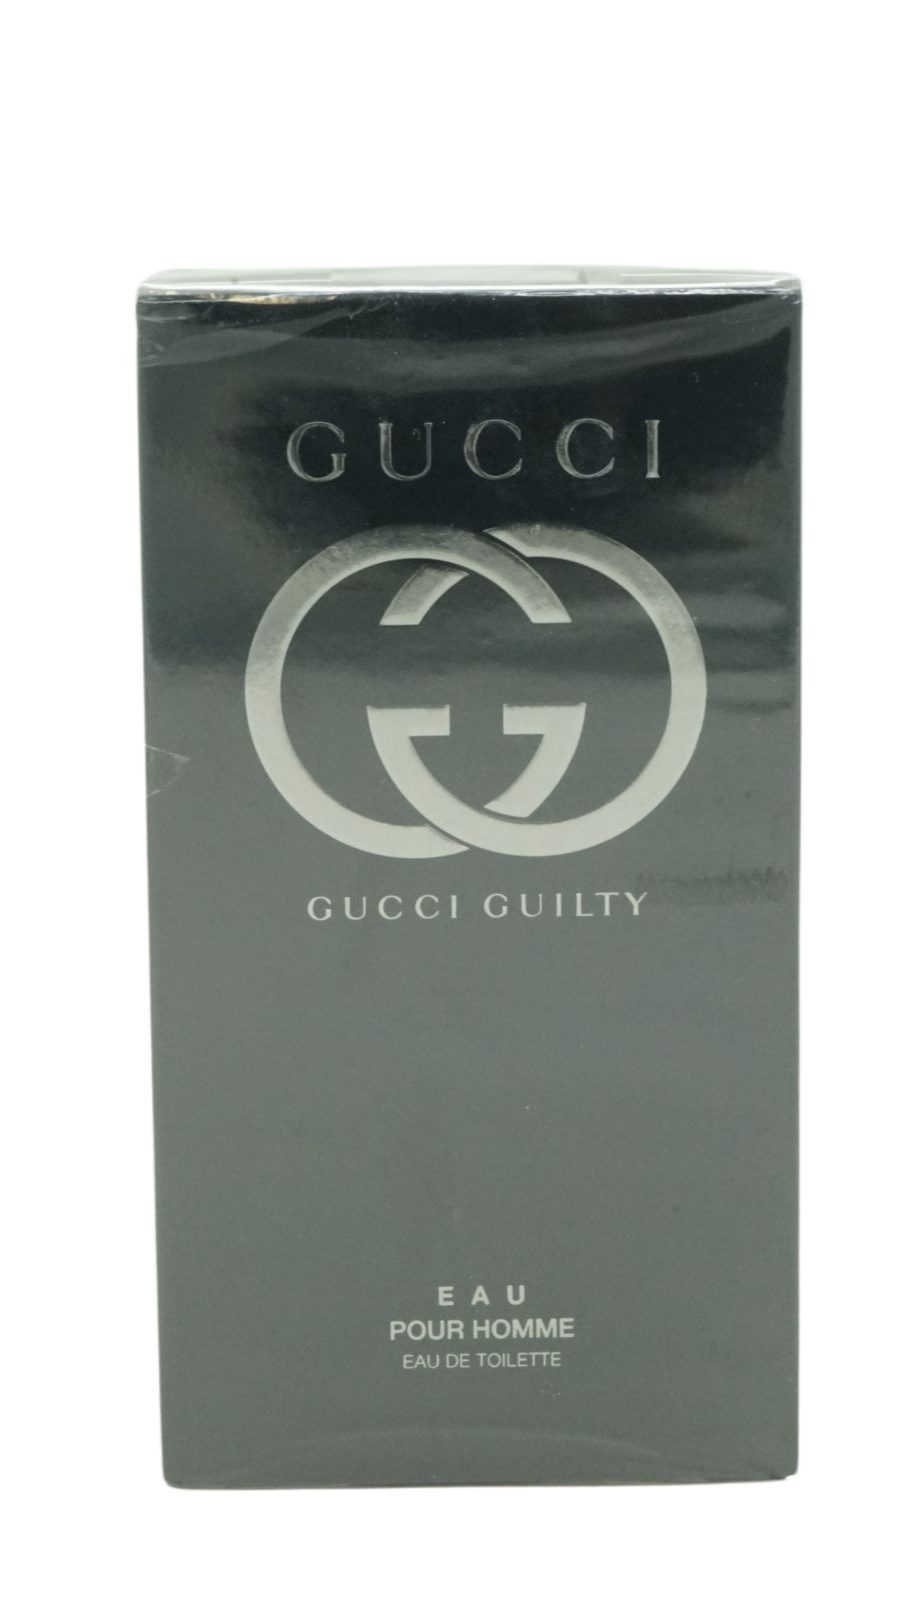 de GUCCI homme Eau de Toilette Gucci pour Guilty Eau 90ml Toilette